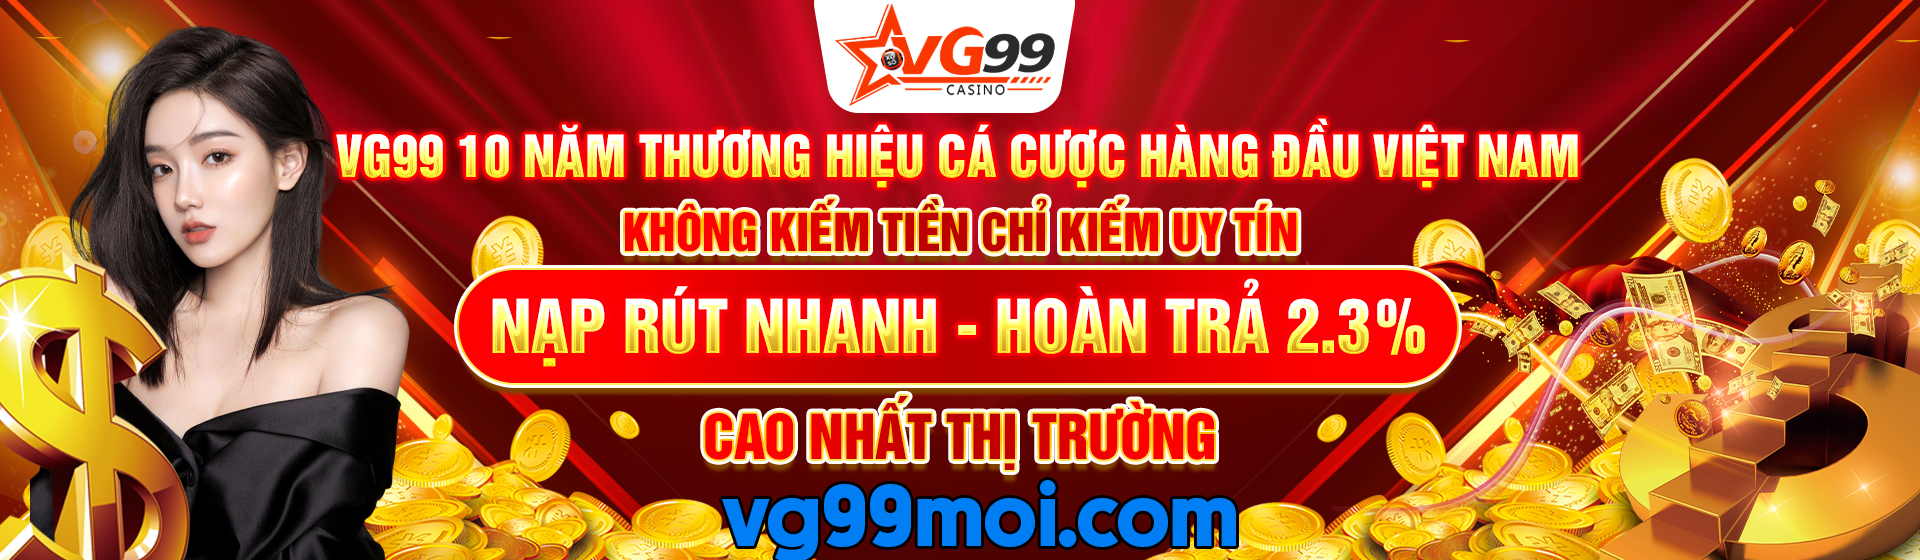 VG99 - Nhà cái VG99 Casino uy tín #1 Châu Á, Link VG99 mới nhất